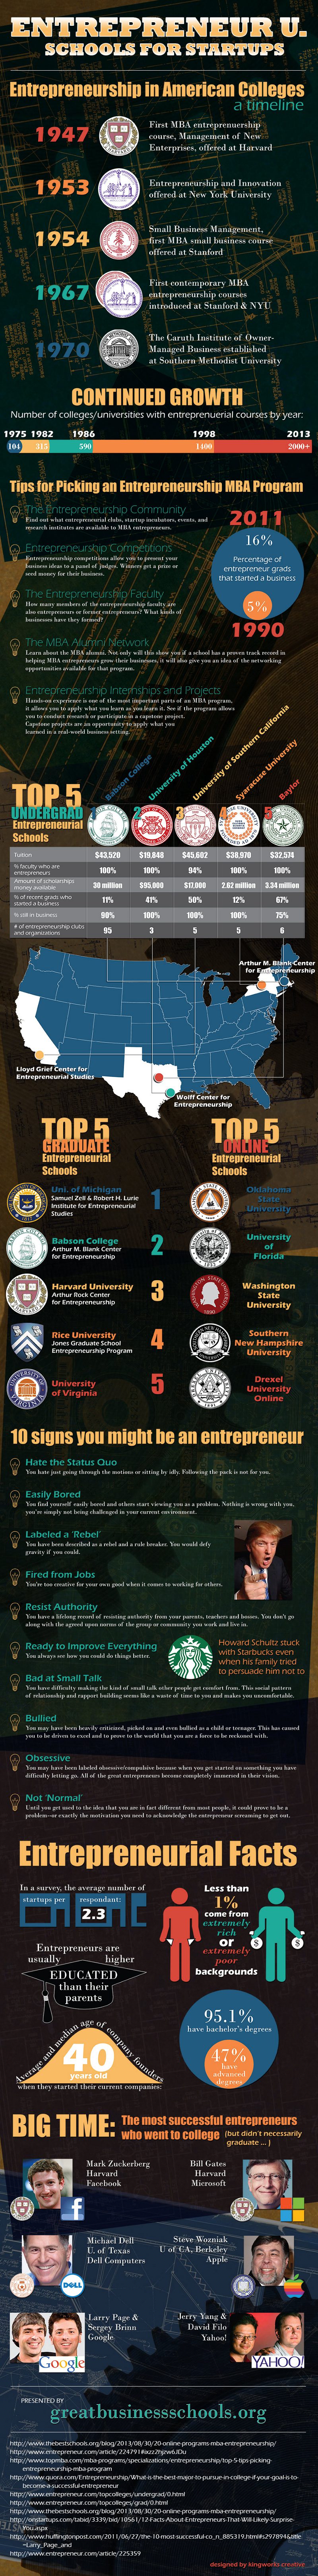 Best Universities for Entrepreneurs